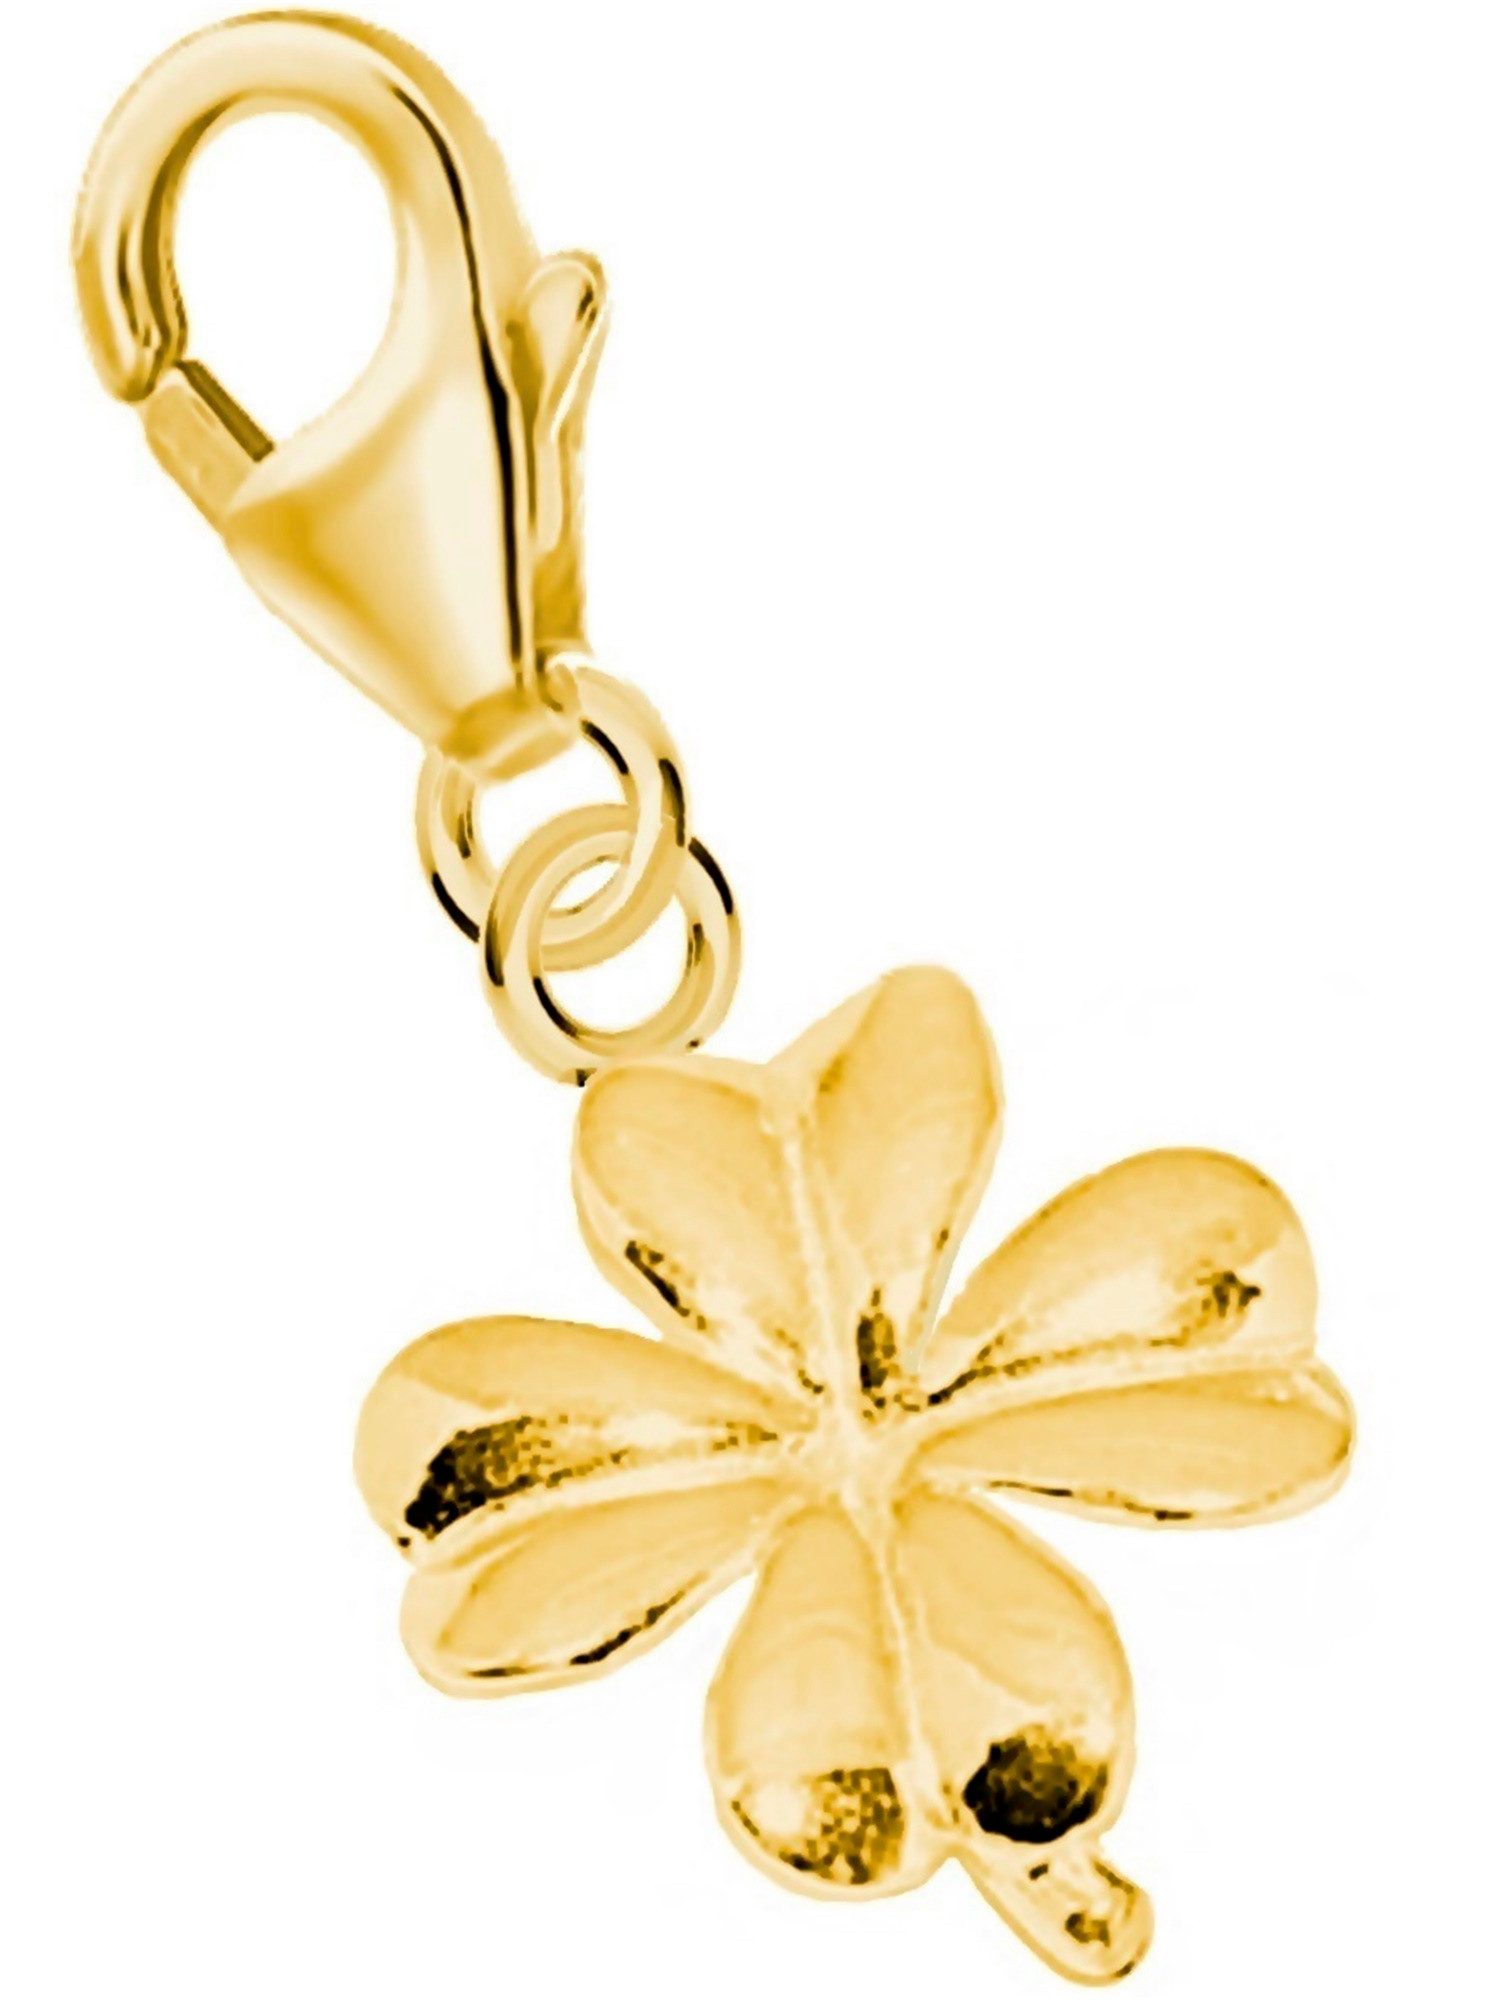 Goldene Hufeisen Charm-Einhänger Kleeblatt Karabiner Charm 925 Sterling Silber Vergoldet (1 Stück, inkl. Etui), Gelbgold überzogen